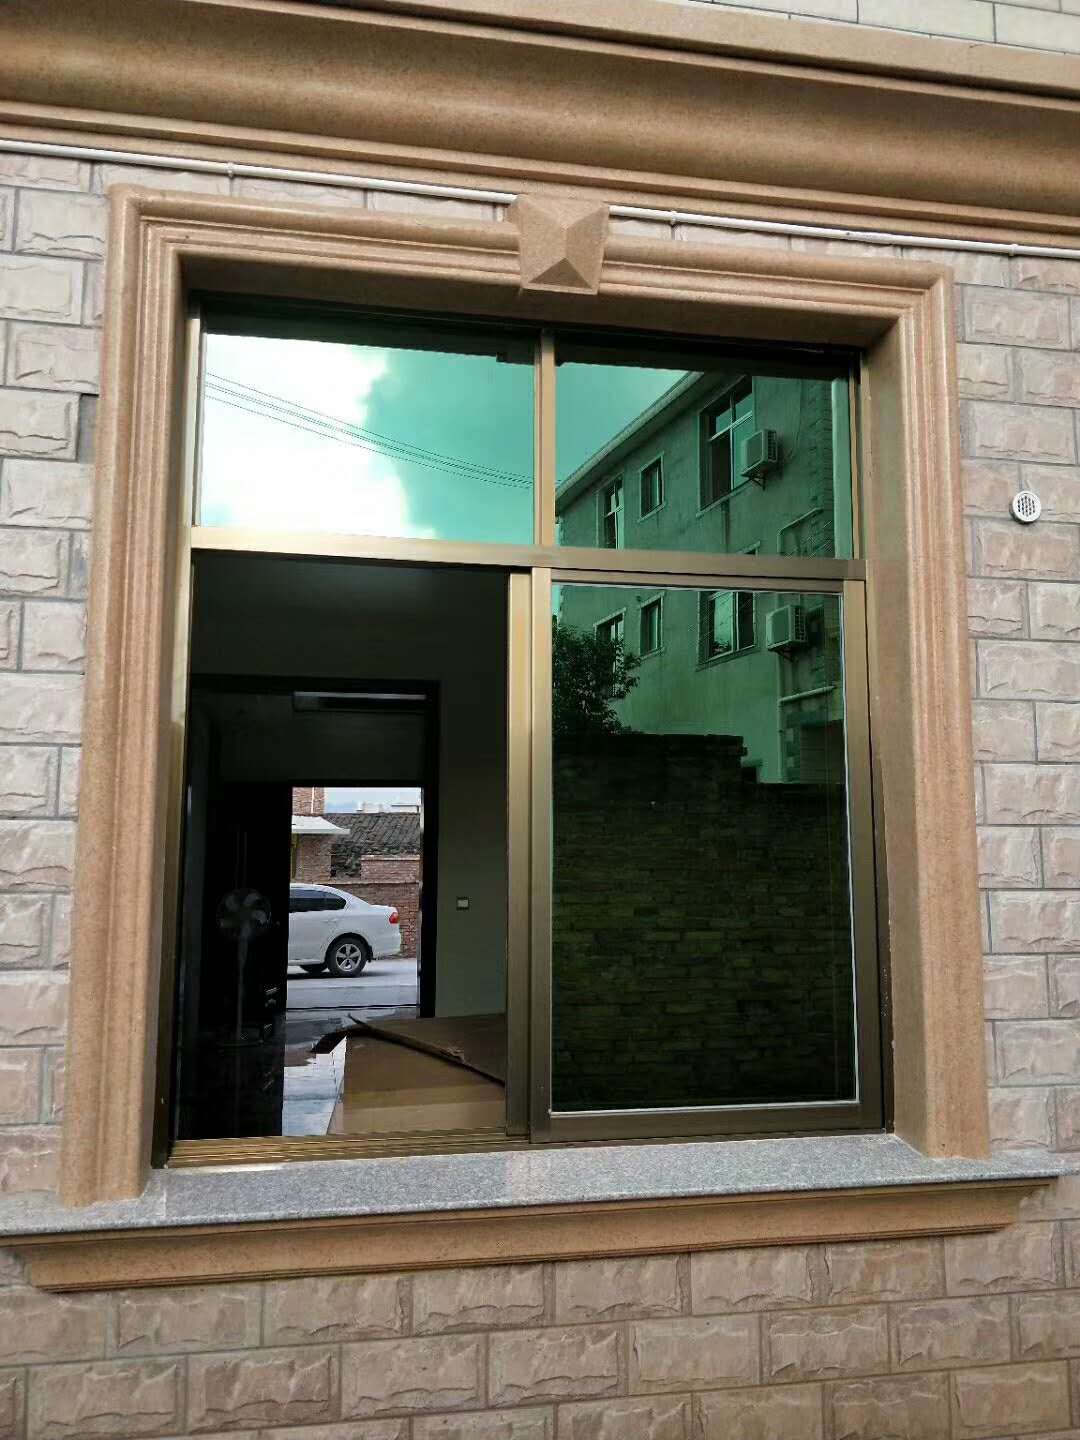 窗套模具|罗马窗套模具|欧式窗套模具工程案例 - 大唐稳江模具